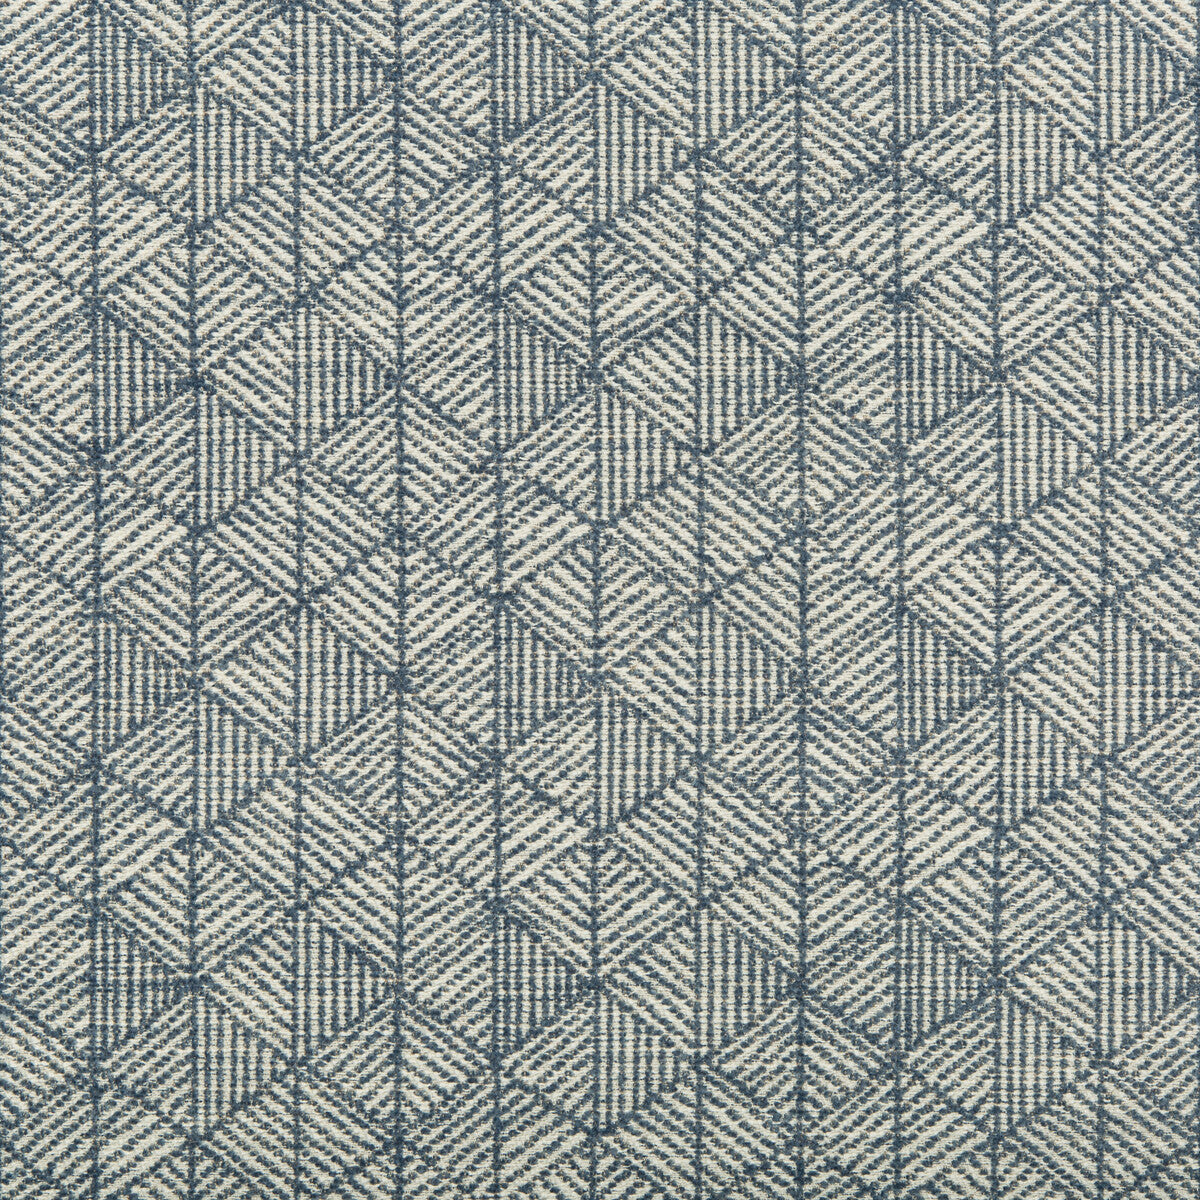 Kravet Design fabric in 35697-5 color - pattern 35697.5.0 - by Kravet Design